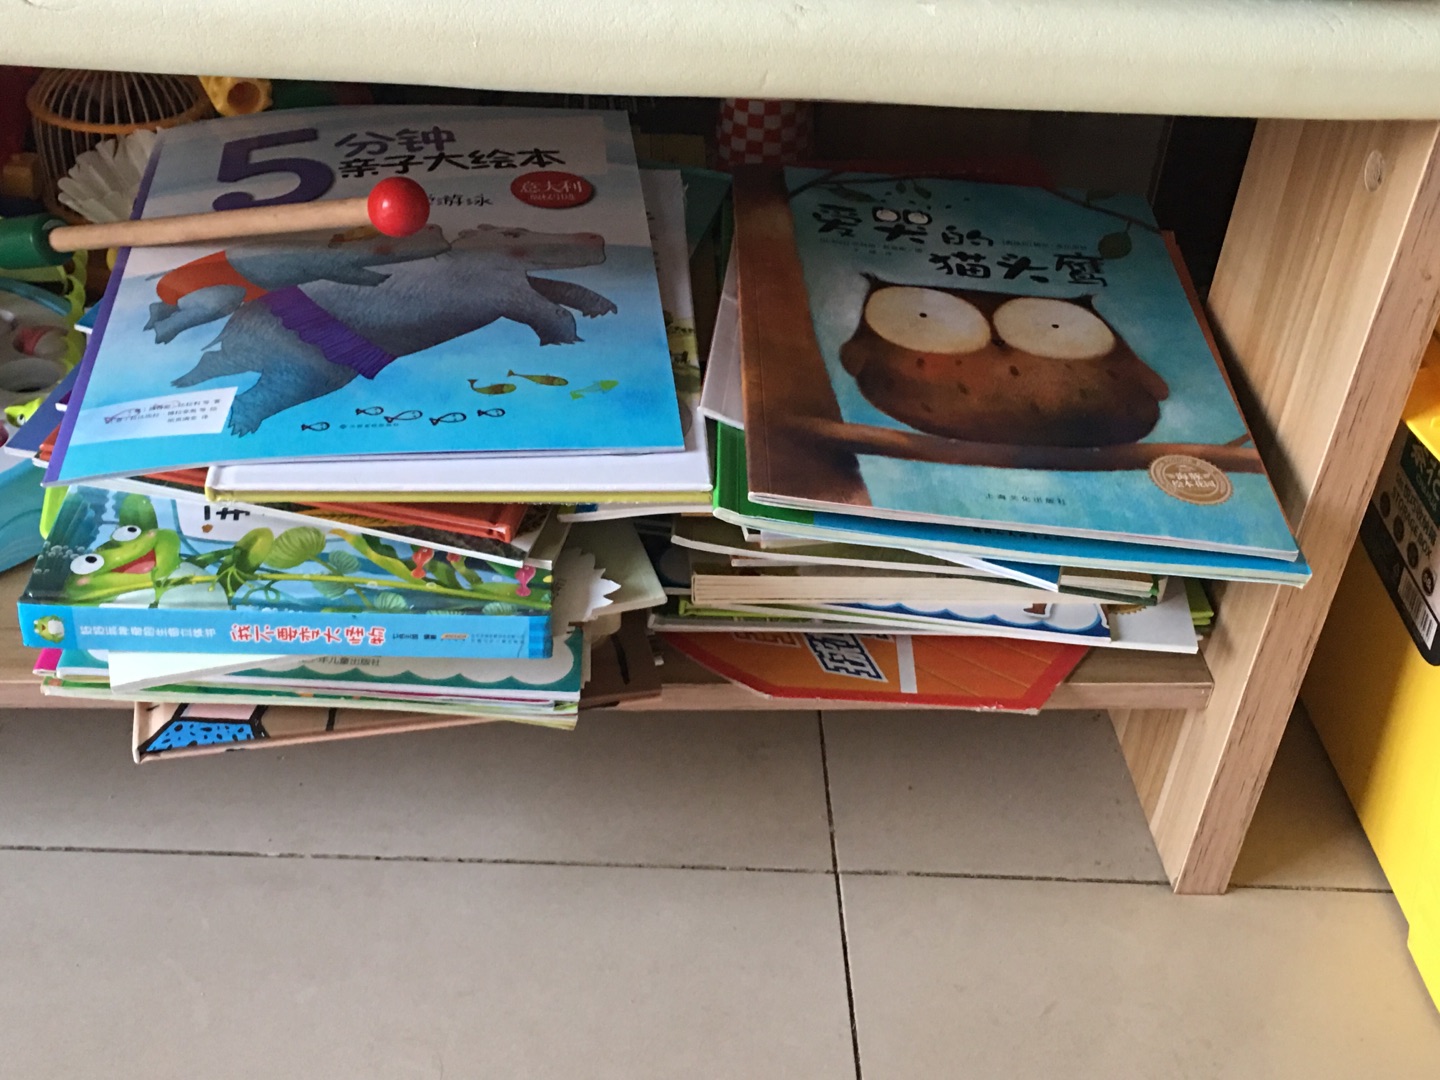 在这里买了很多很多书了，慢慢给孩子看吧，反正她每天都要看几本。